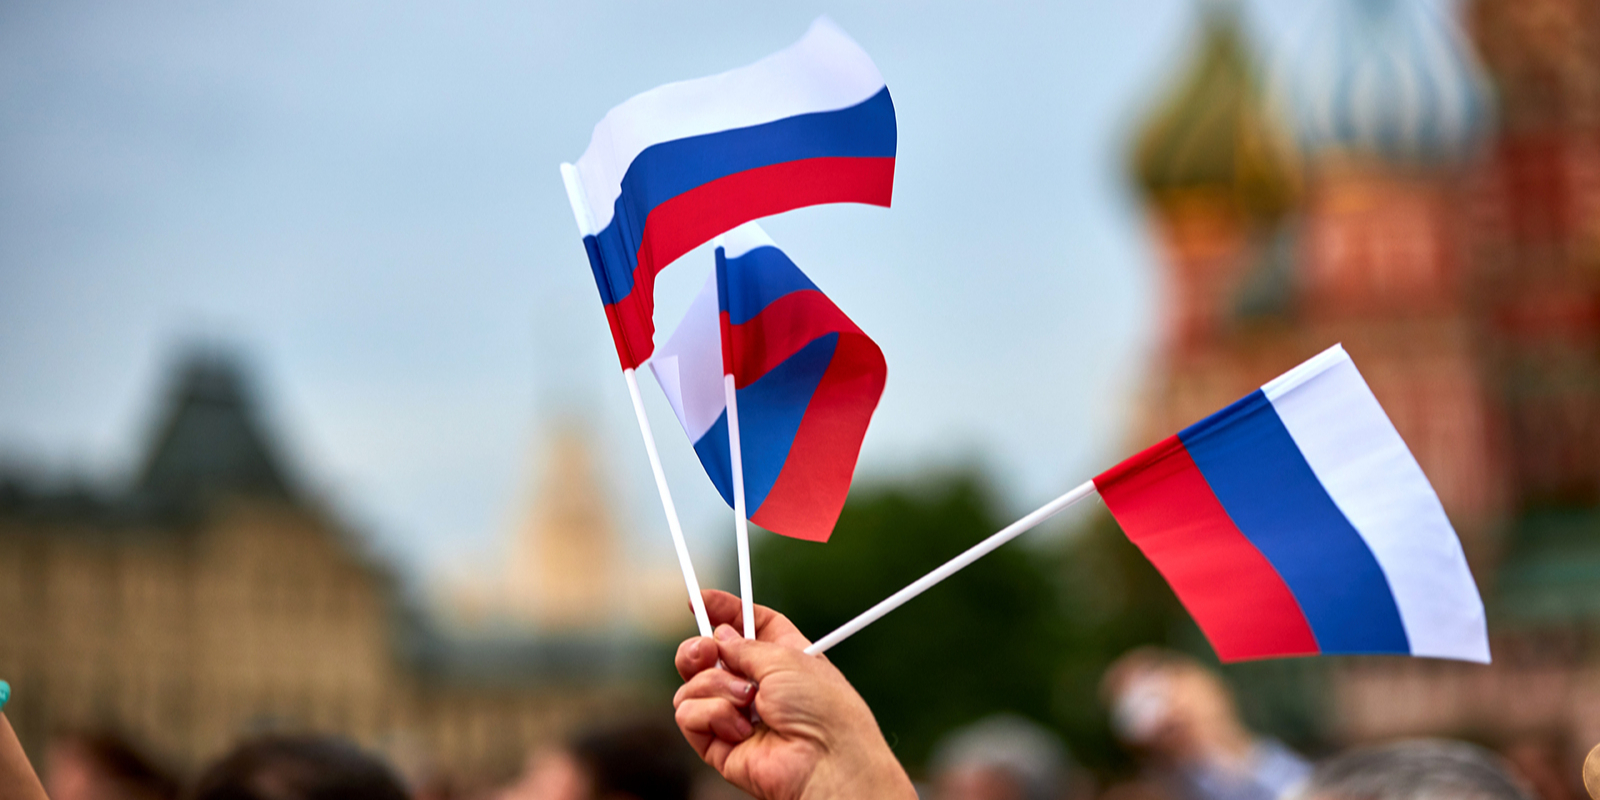 Спортсмены и артисты рассказали о том, что для них значит российский флаг, фото